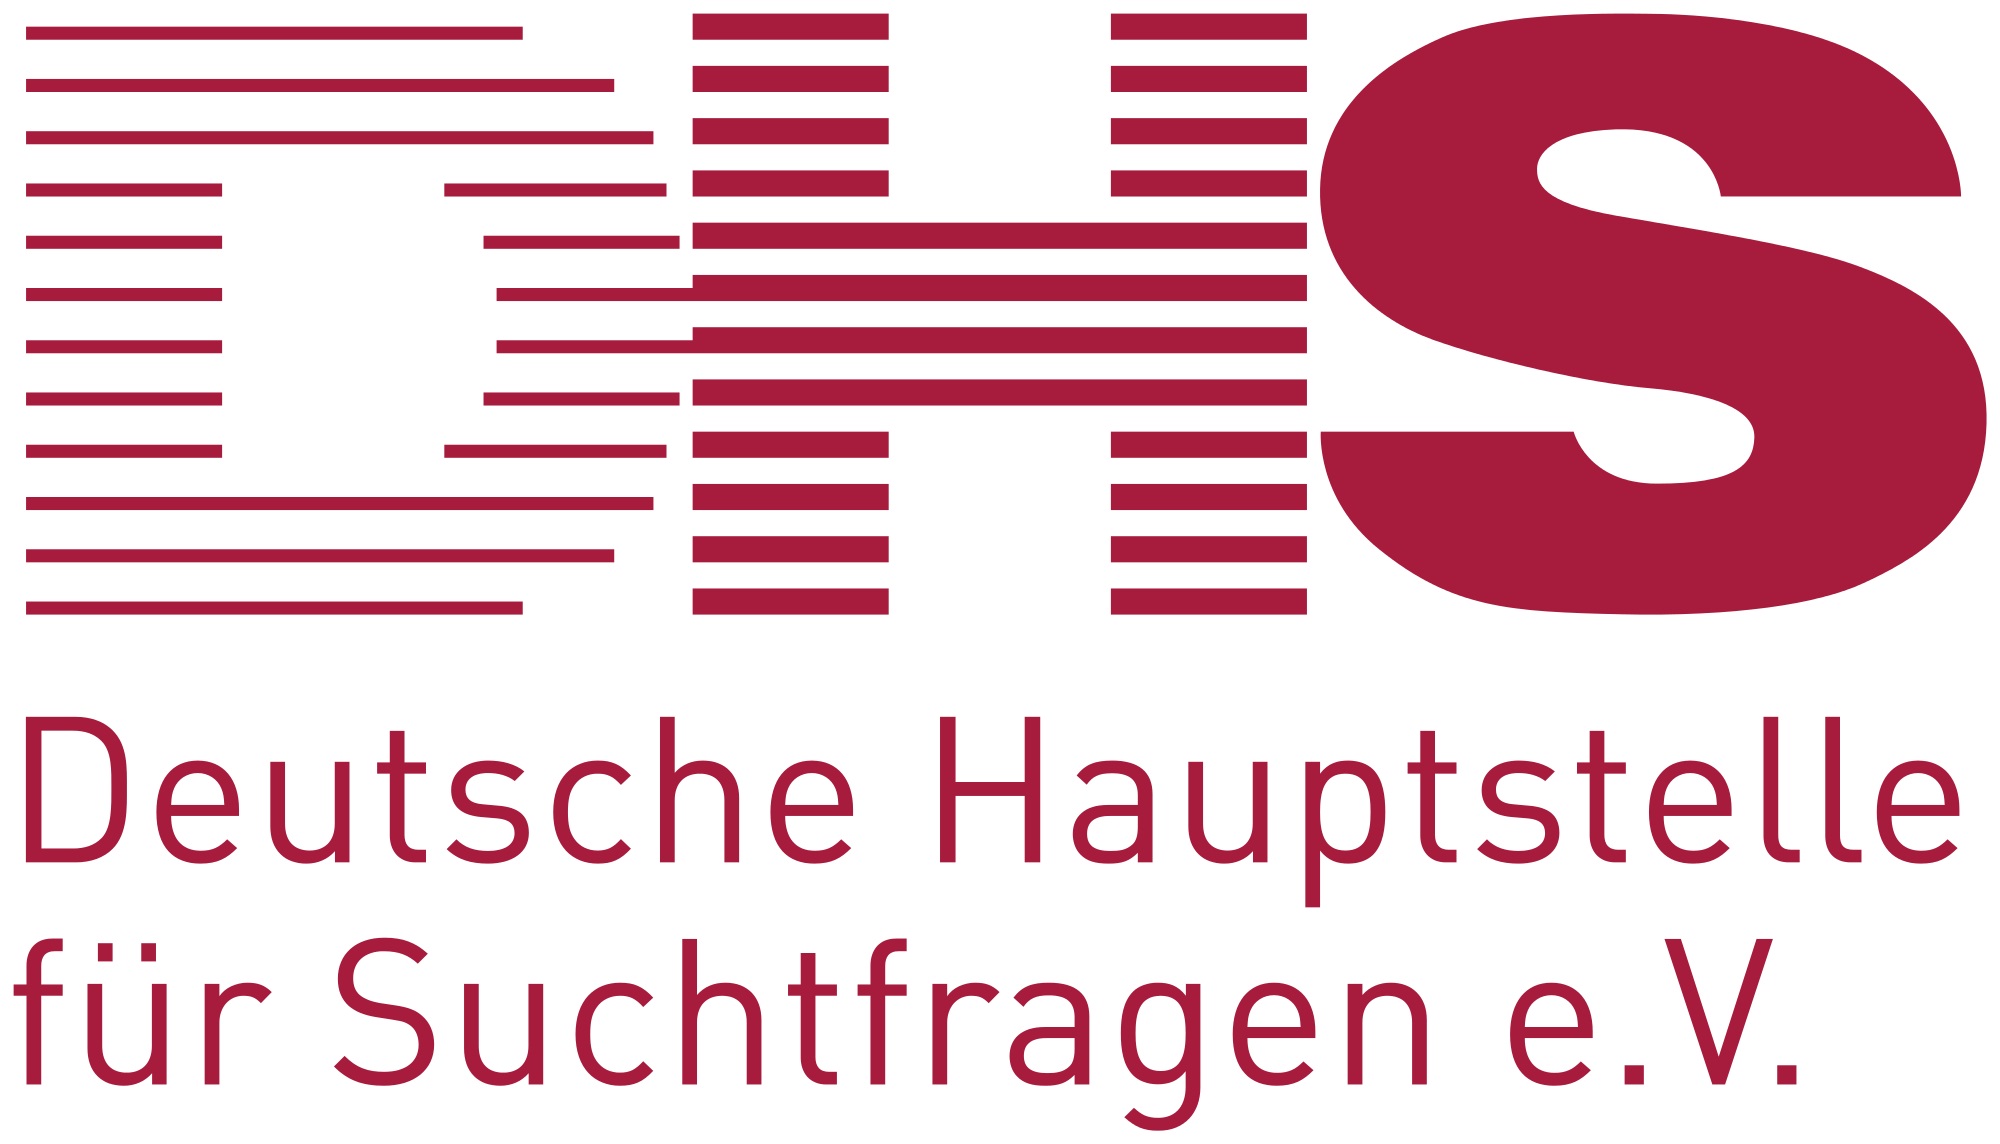 Deutsche Hauptstelle für Suchtfragen e.V|Spielautomat|not available in your territory|Deutsche Hauptstelle für Suchtfragen e.V